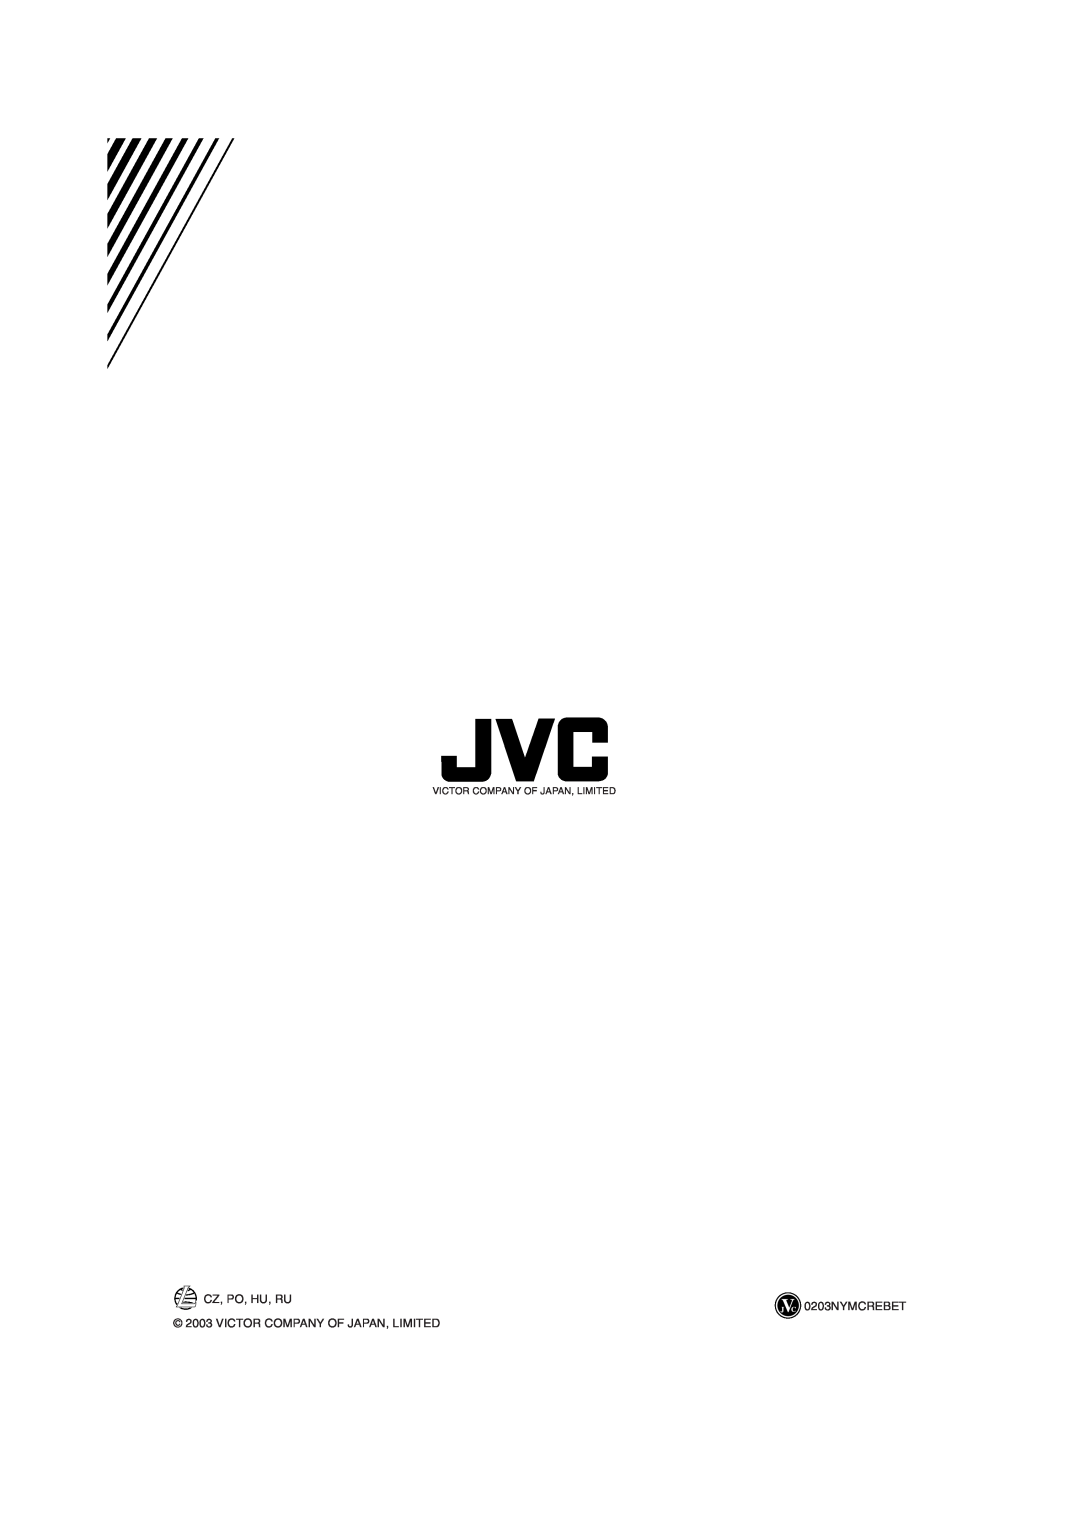 JVC MX-KA66 manual CZ, PO, HU, RU 0203NYMCREBET, Victor Company Of Japan, Limited 